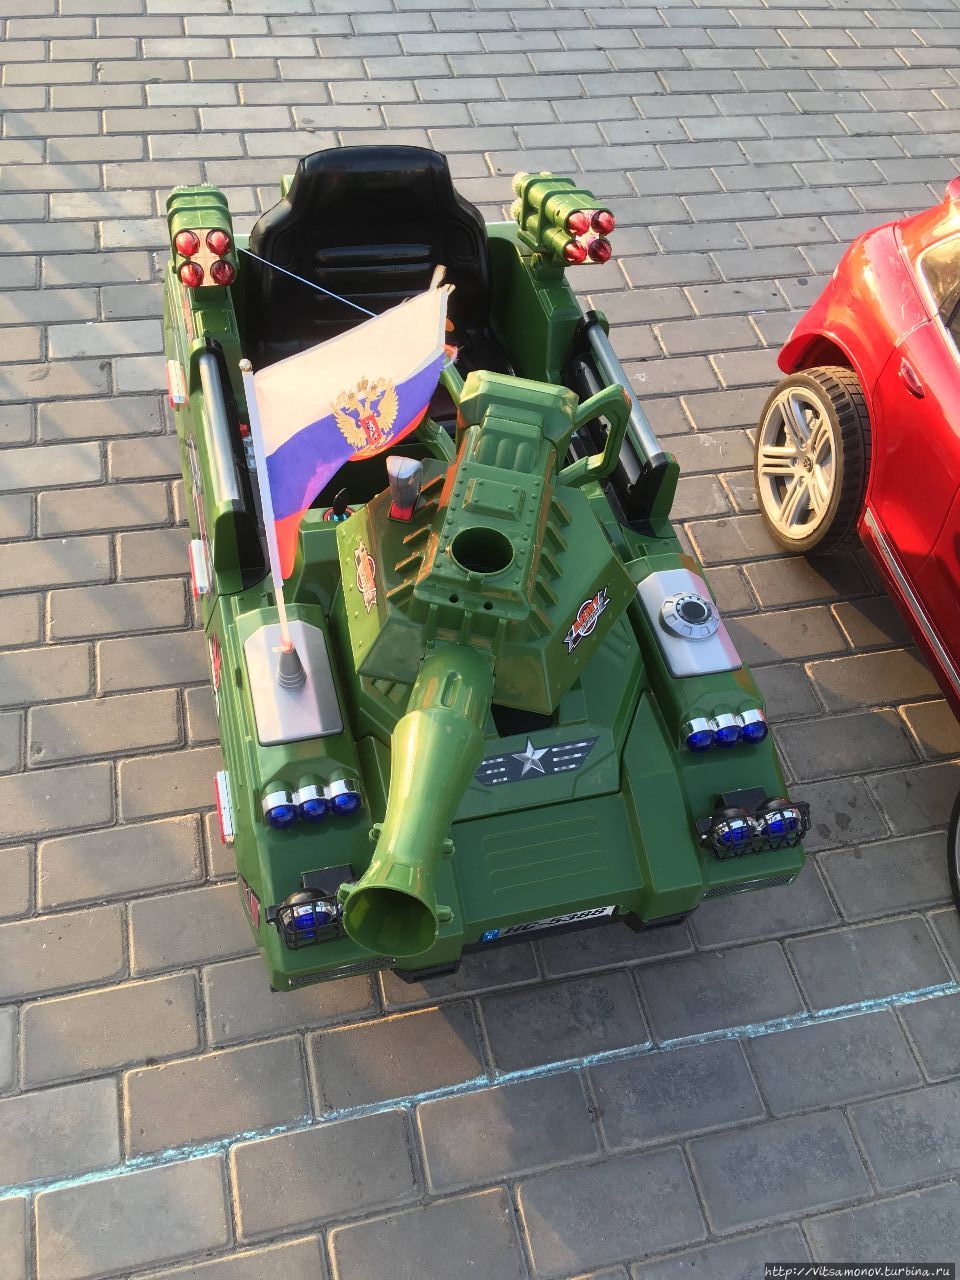 Вот на таком танке могут прокатиться дети Астрахань, Россия